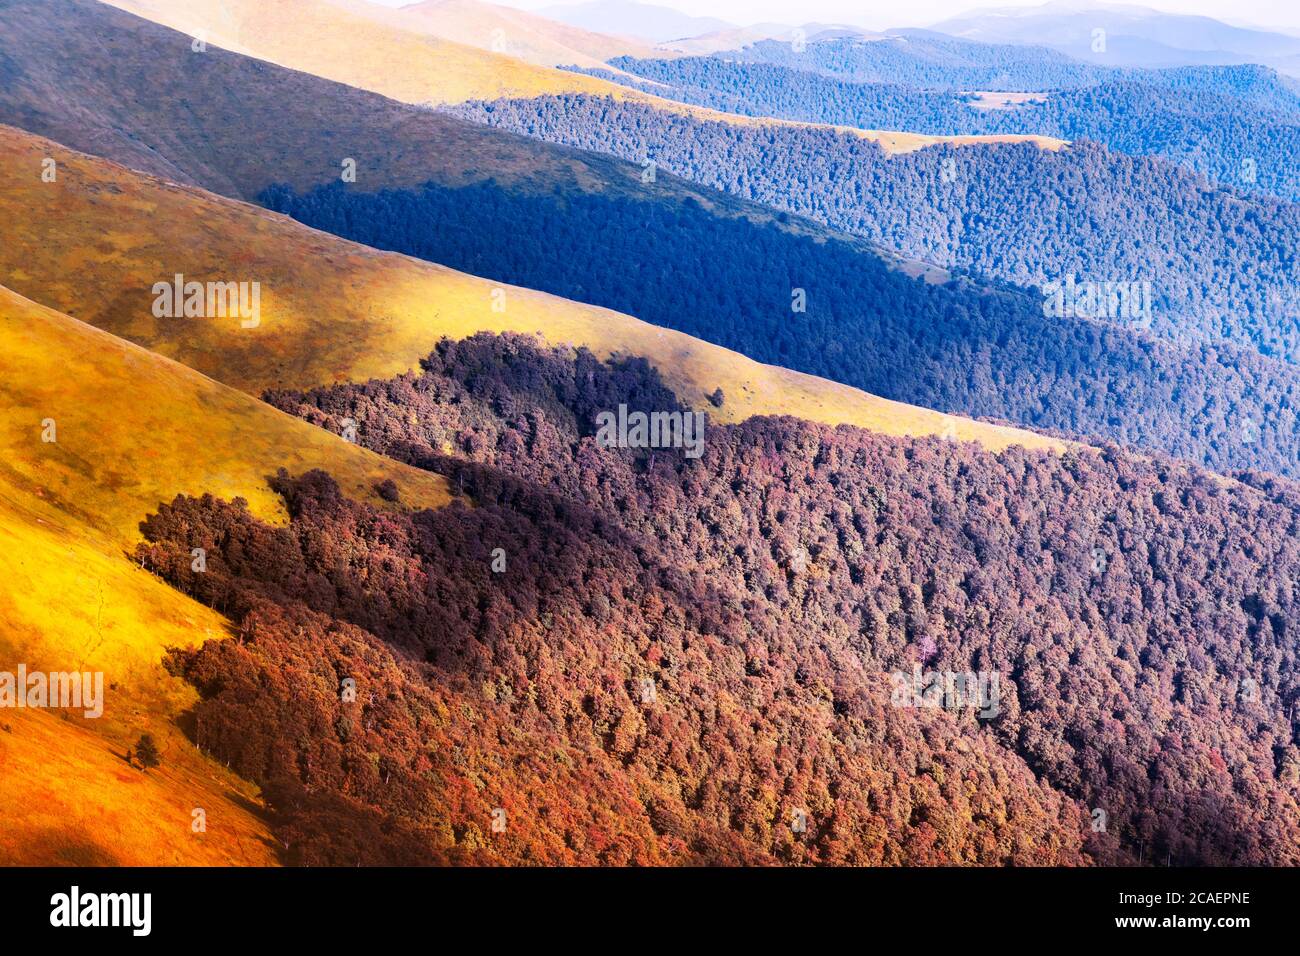 Pittoresche catene montuose autunnali ricoperte di faggeta rossa nei Carpazi, in Ucraina. Fotografia di paesaggio Foto Stock